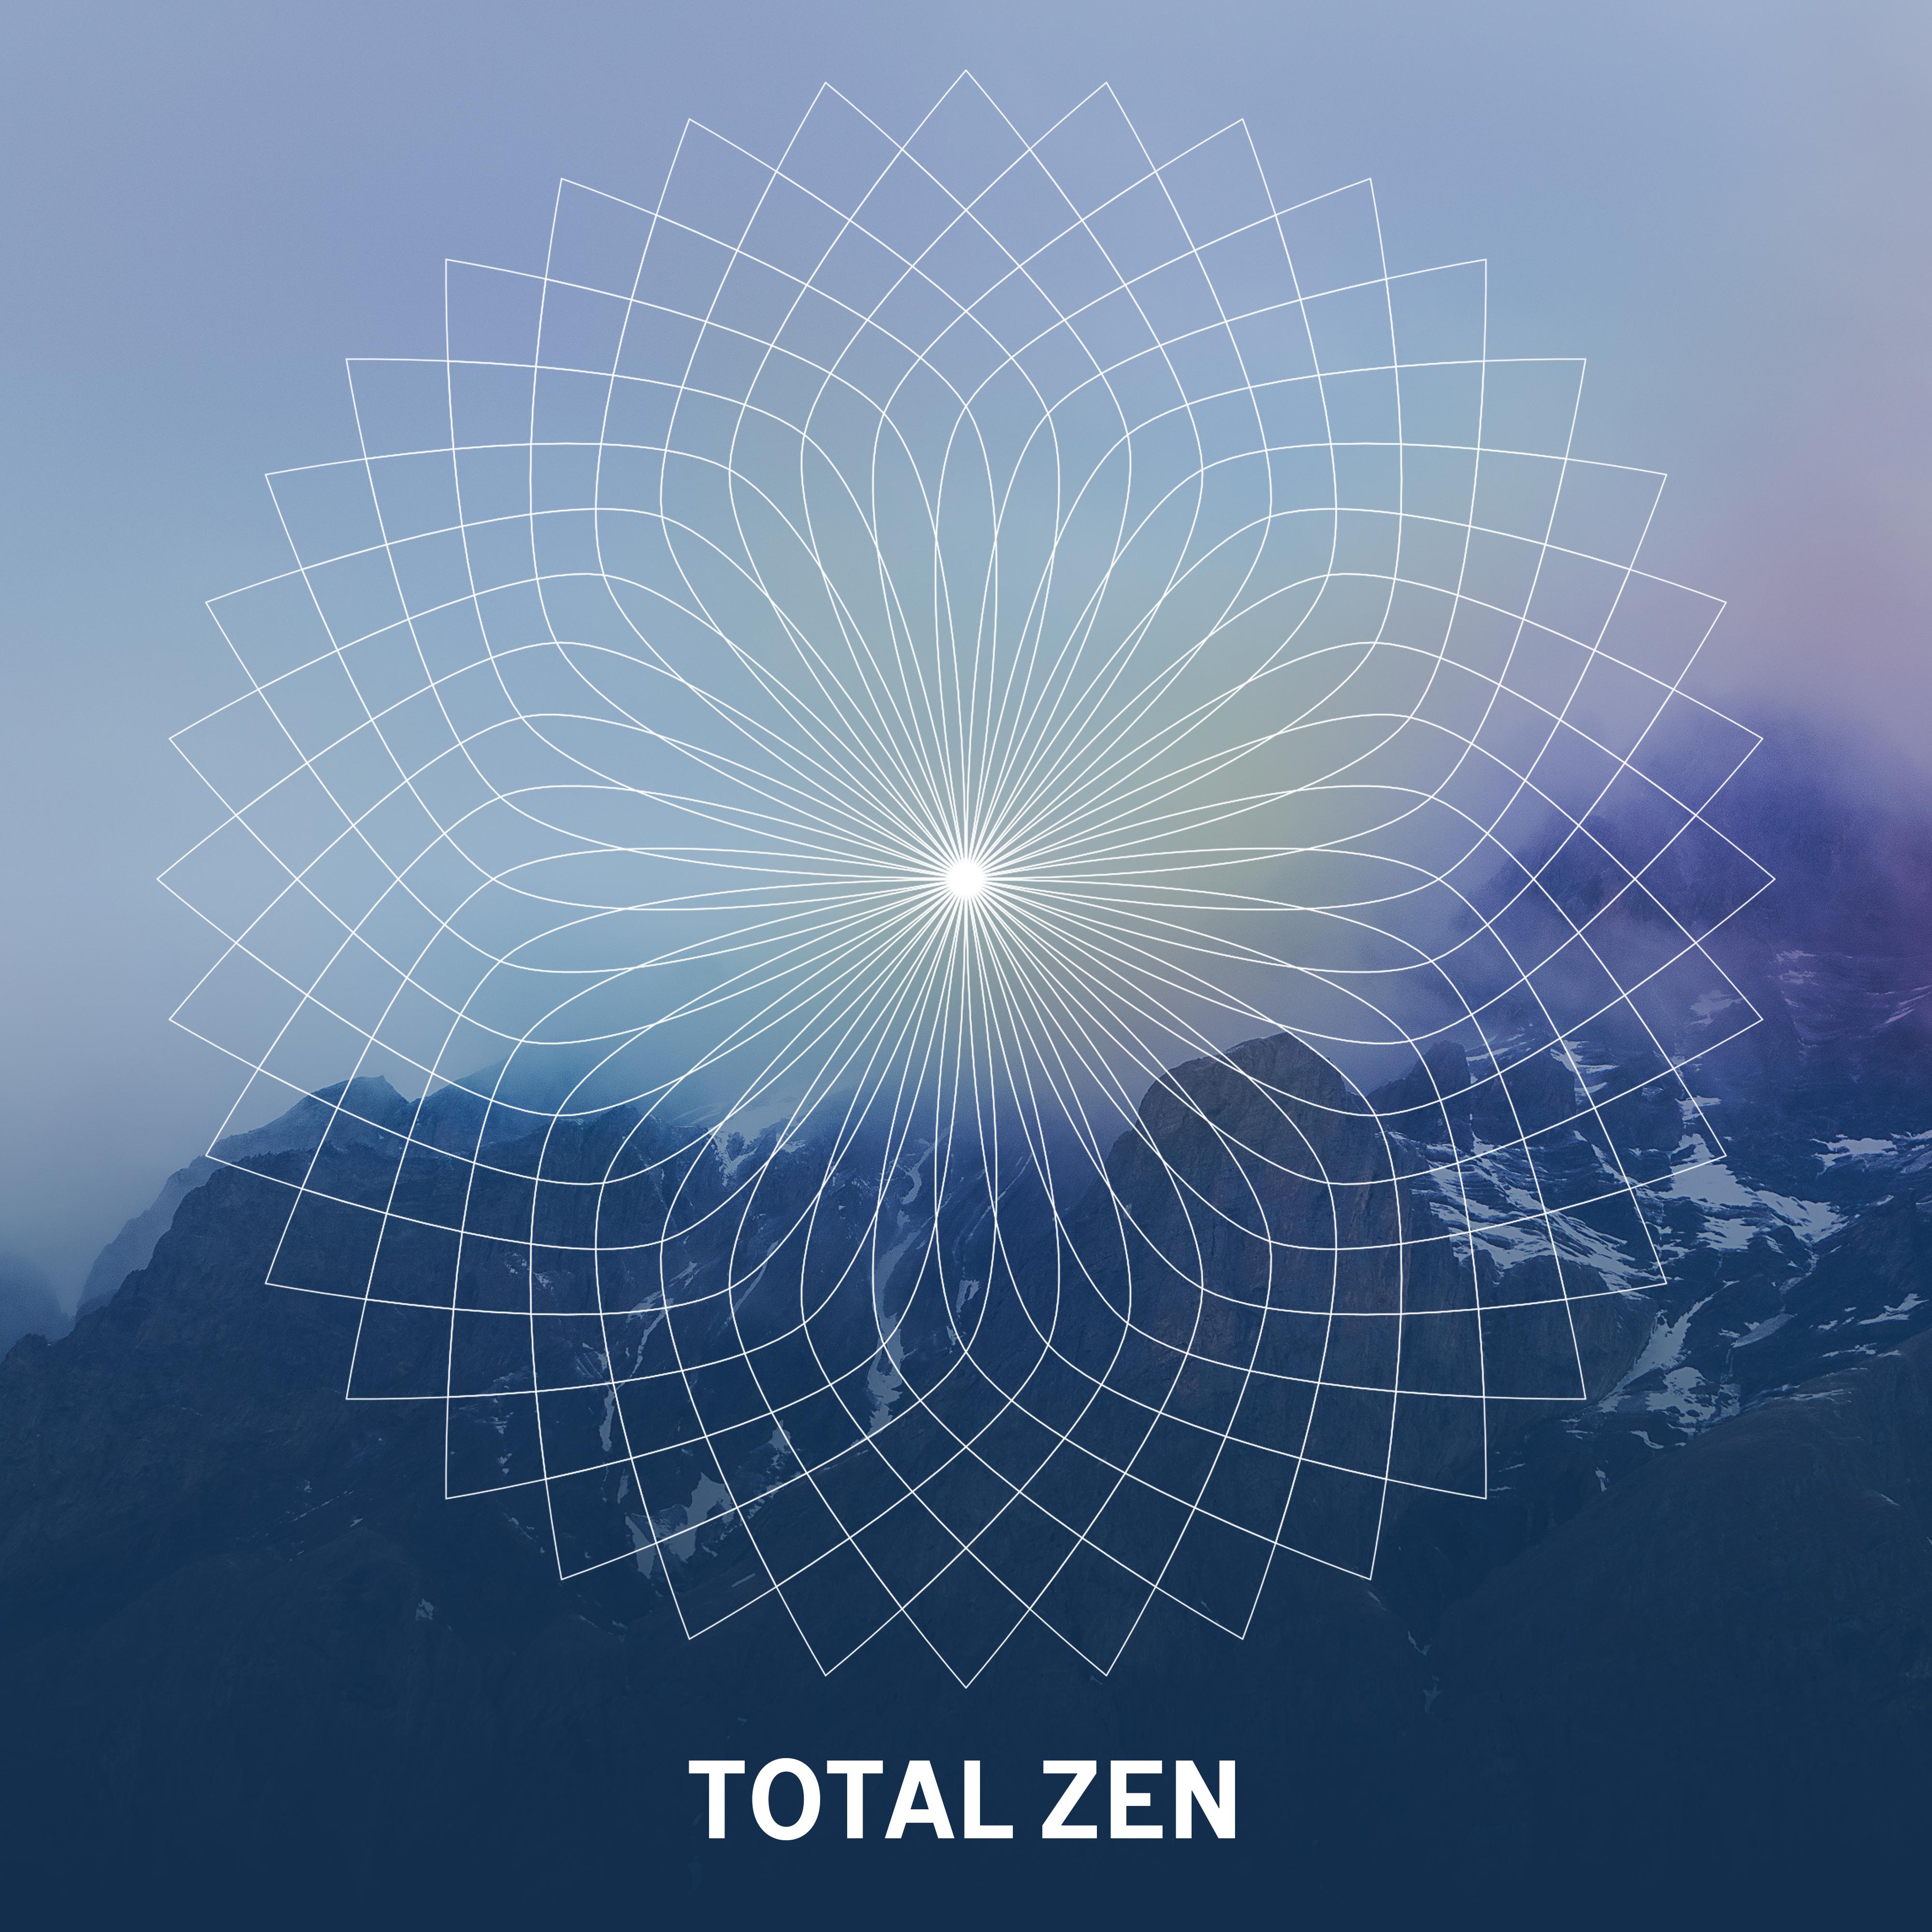 Total Zen  Healing Nature Sounds, Zen, Bliss, Relax, Rest, Relief Stress, New Age 2017